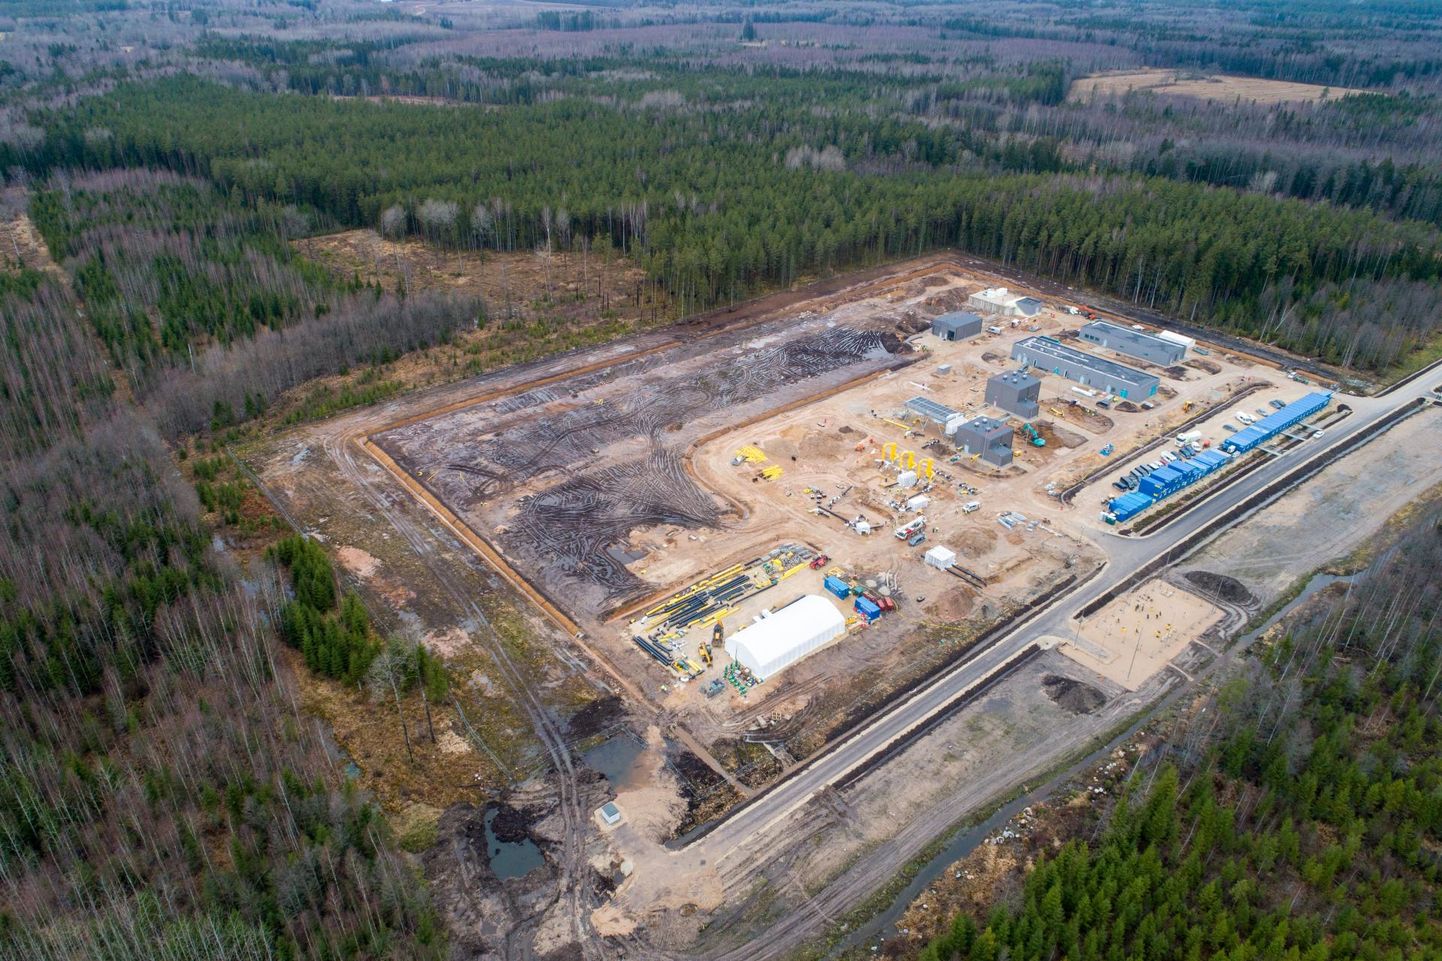 Möödunud suveks pidi valmima 28,3 miljonit eurot maksev Puiatu kompressorjaam, mis on osa Balticconnectori gaasiühenduse projektist ning peaks tugevdama Eesti ja Läti gaasiühendust.